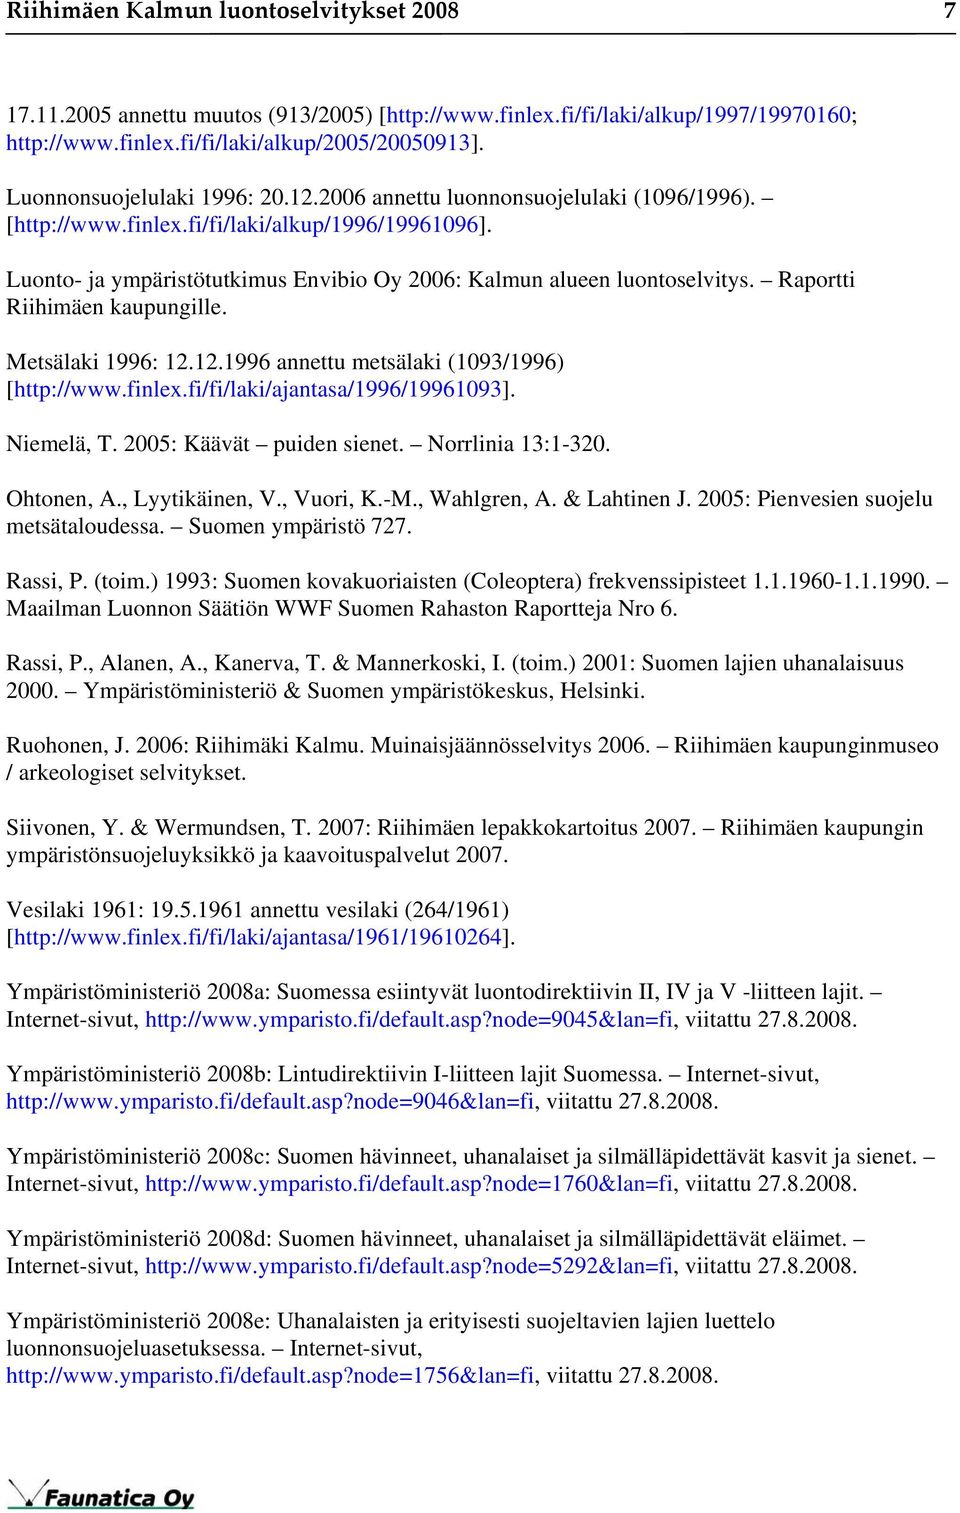 Luonto- ja ympäristötutkimus Envibio Oy 2006: Kalmun alueen luontoselvitys. Raportti Riihimäen kaupungille. Metsälaki 1996: 12.12.1996 annettu metsälaki (1093/1996) [http://www.finlex.